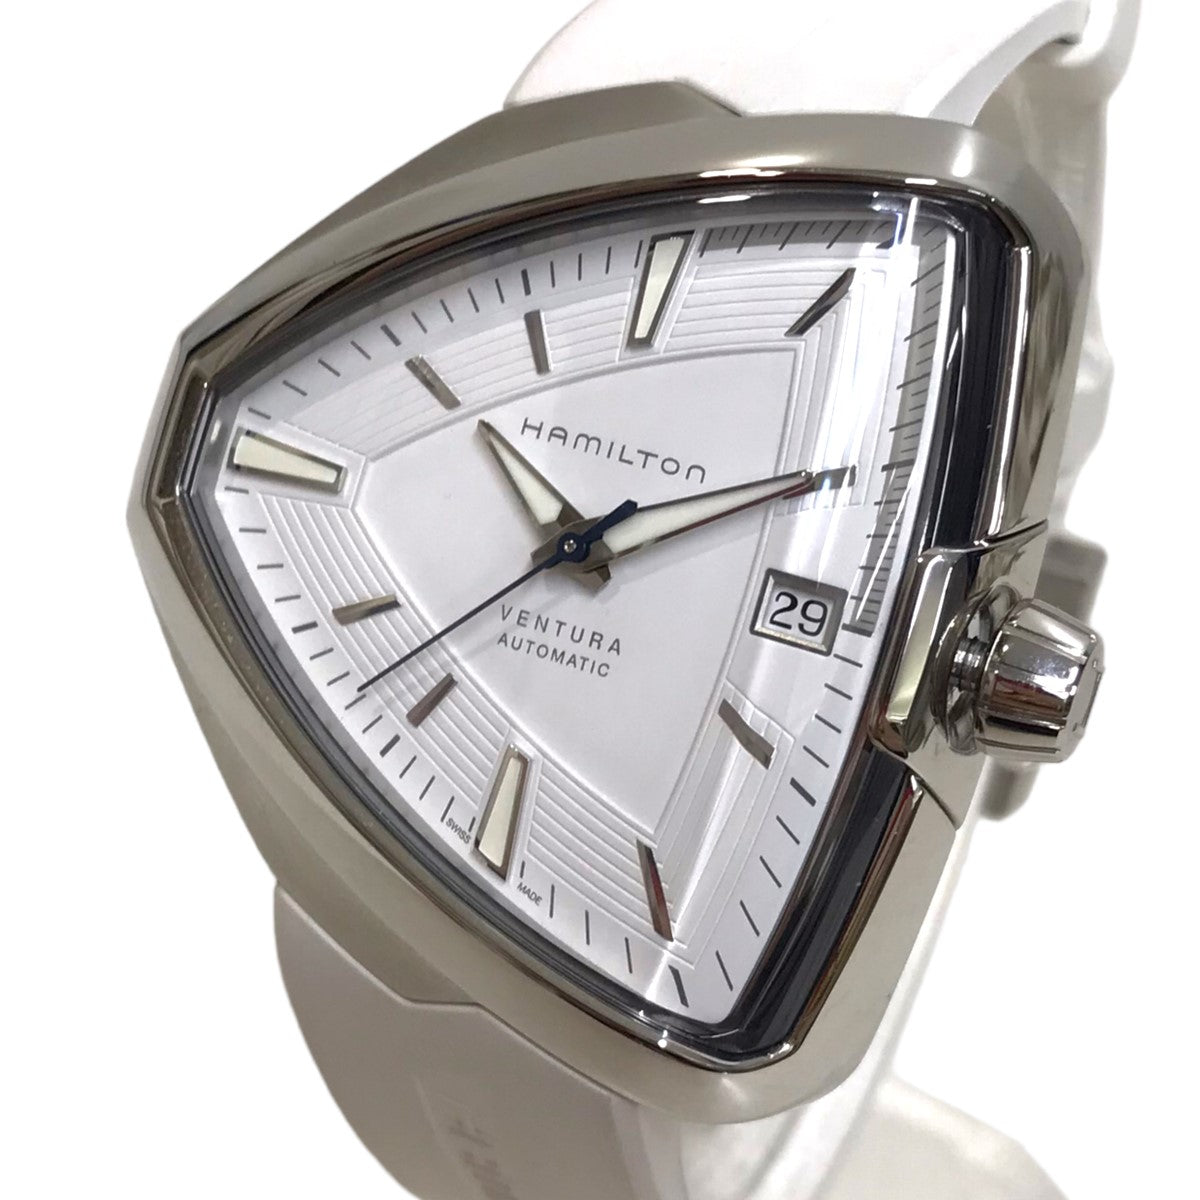 HAMILTON(ハミルトン) 「ベンチュラ エルヴィス80」自動巻き腕時計 ...